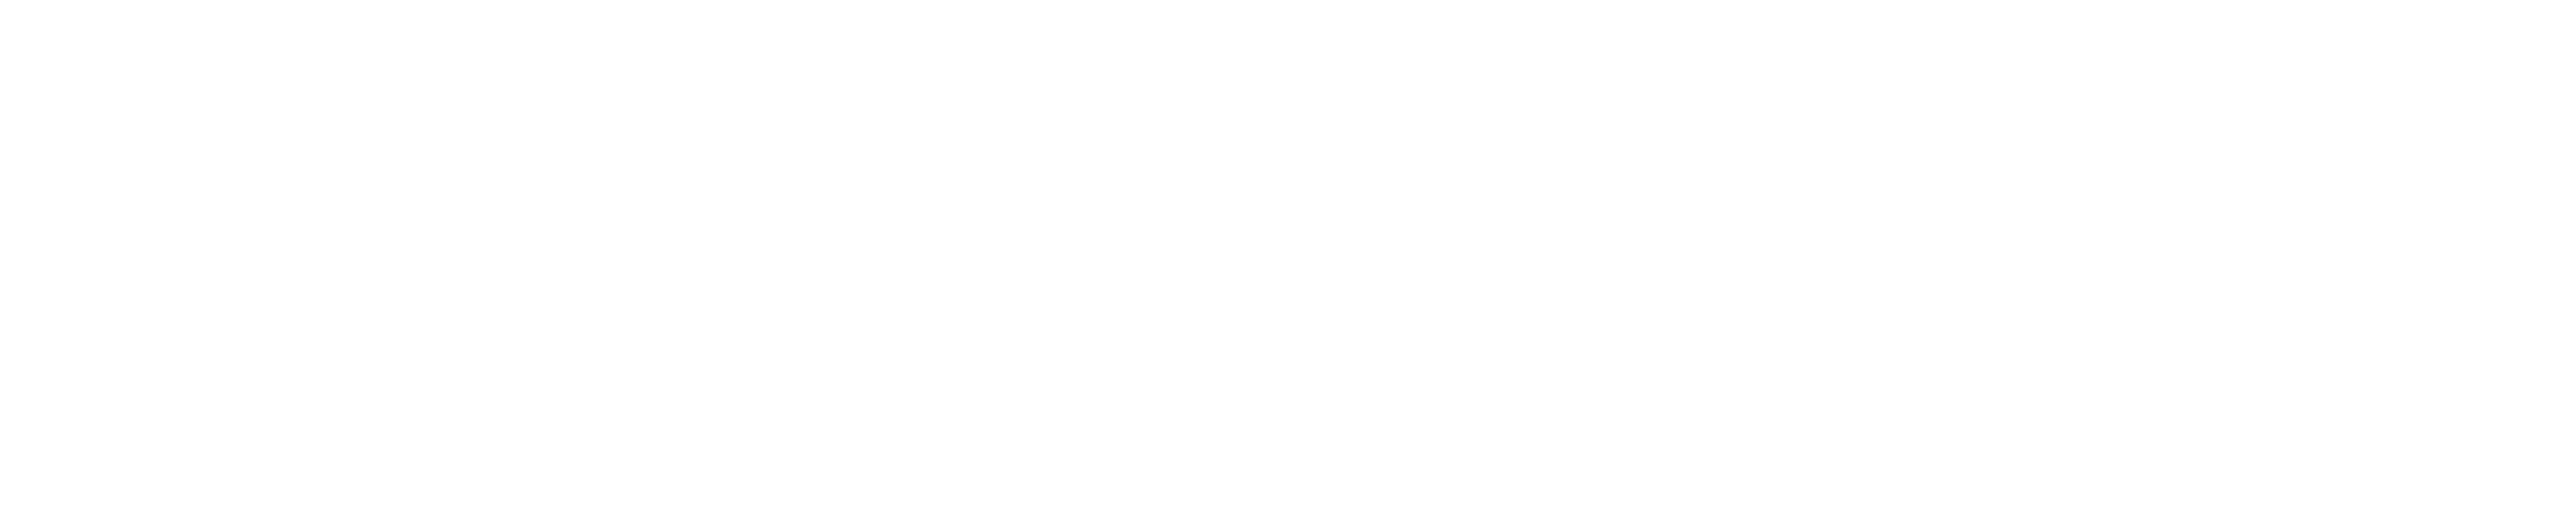 Ethiopian Cargo Logo